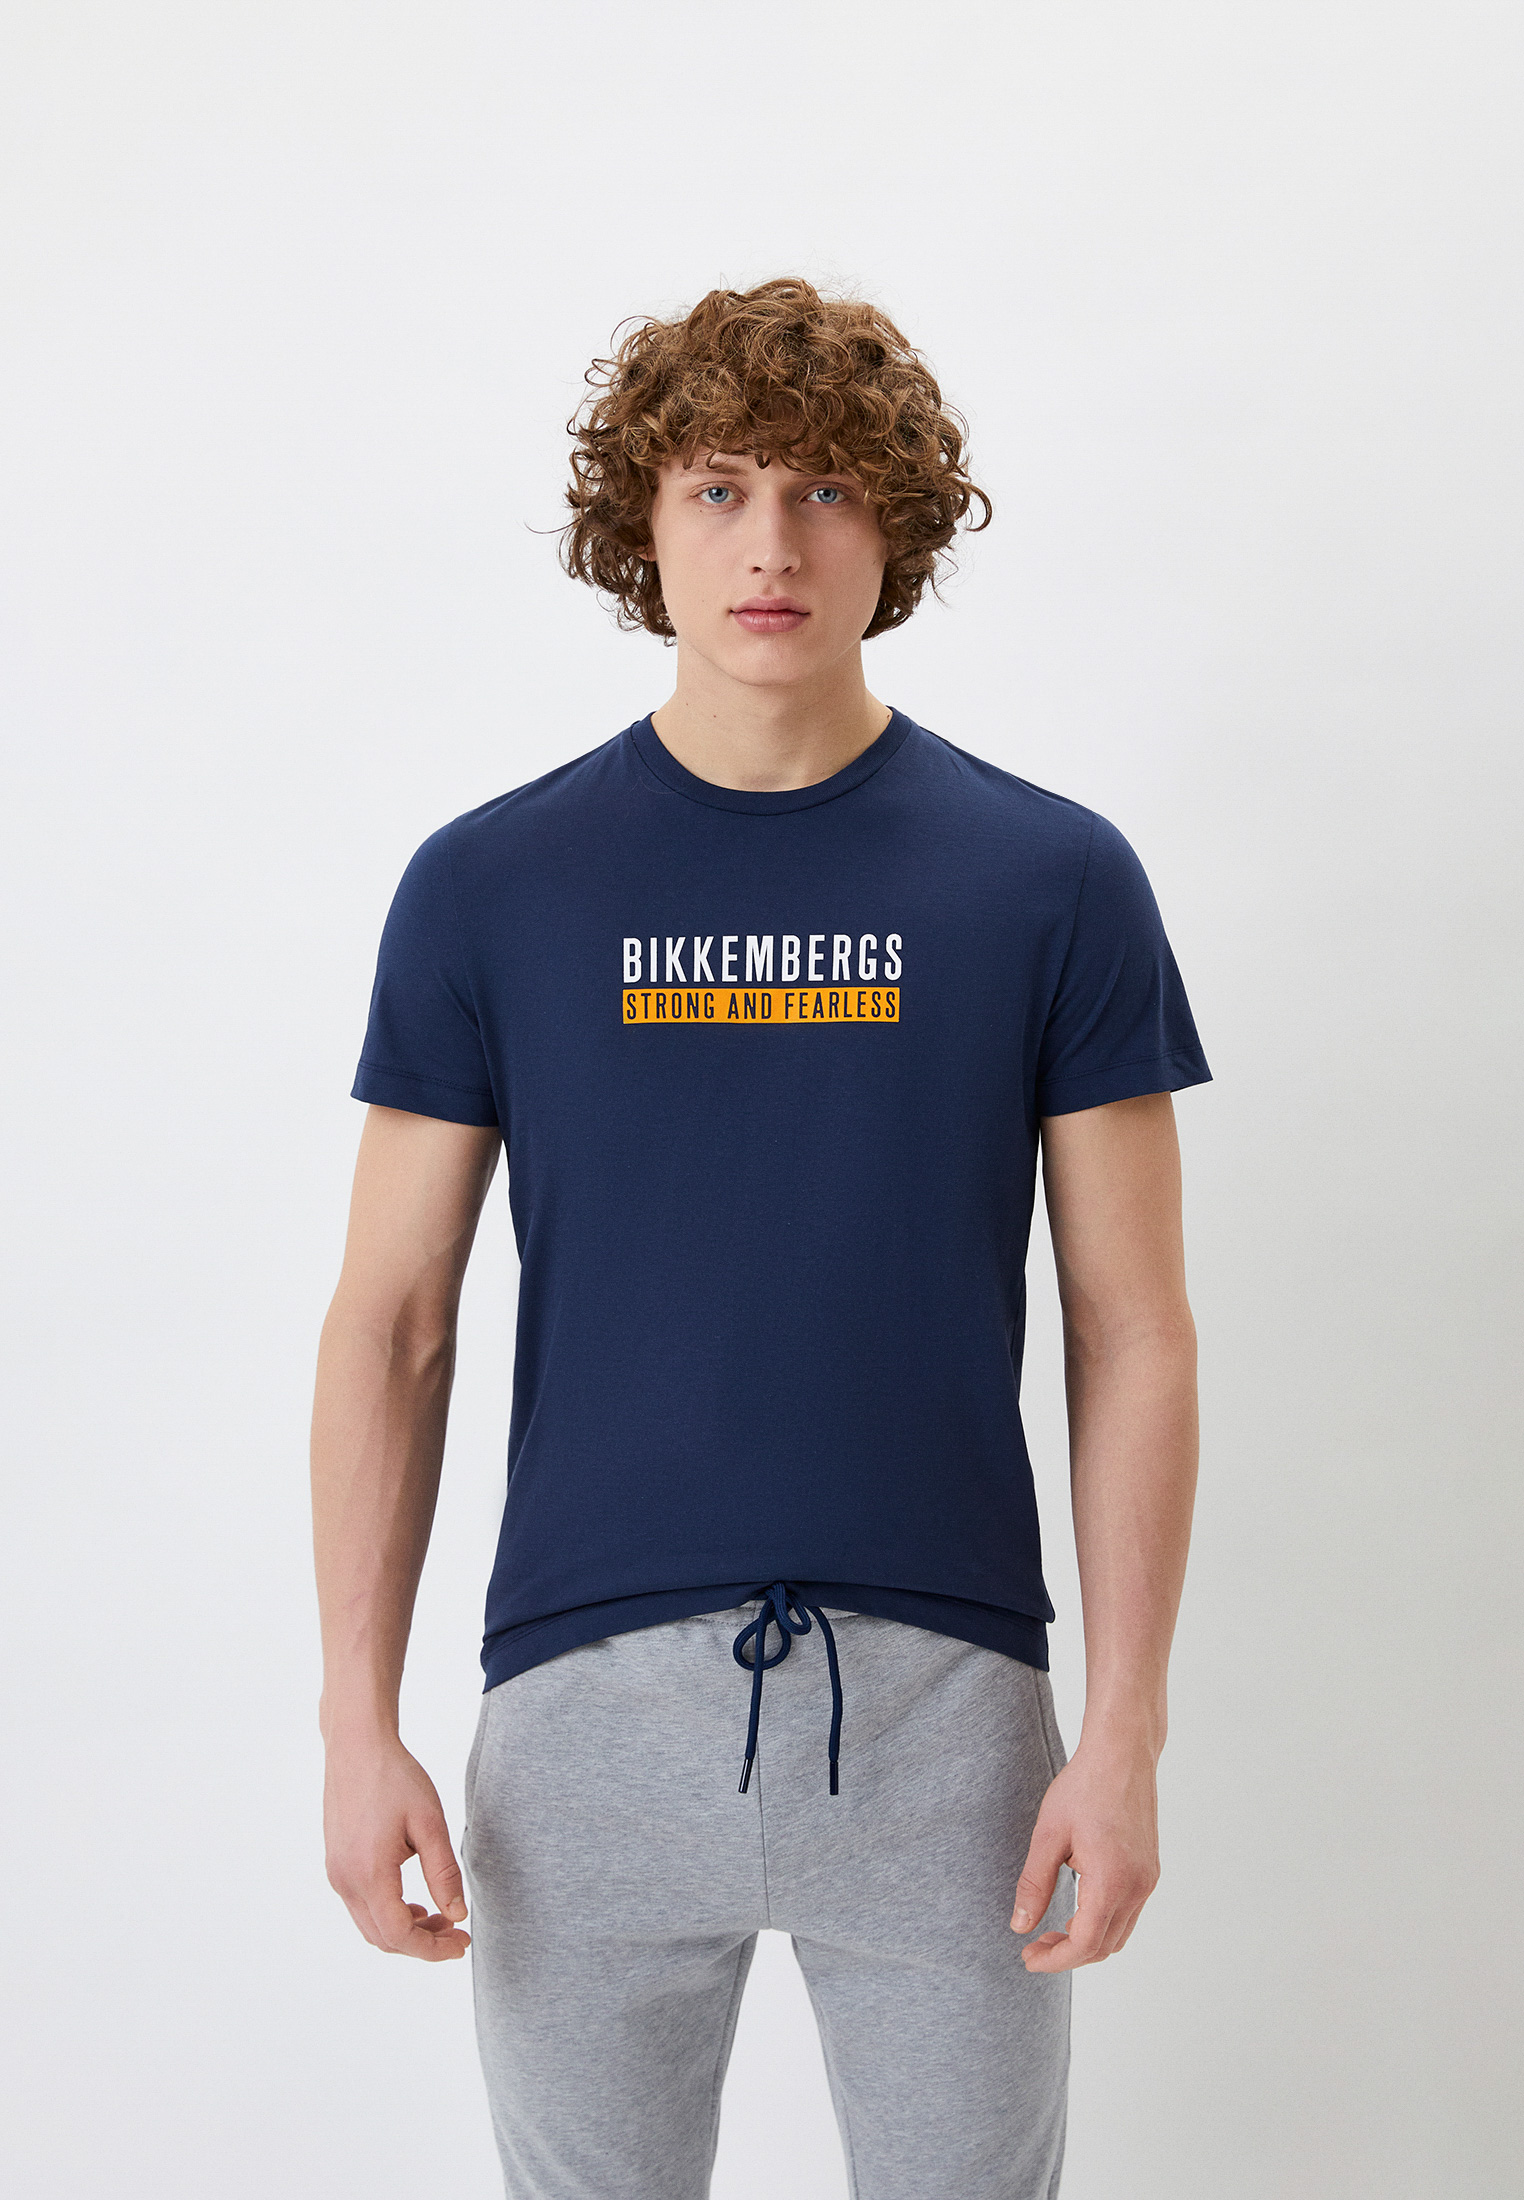 Мужская футболка Bikkembergs (Биккембергс) C 4 101 67 M 4349: изображение 1